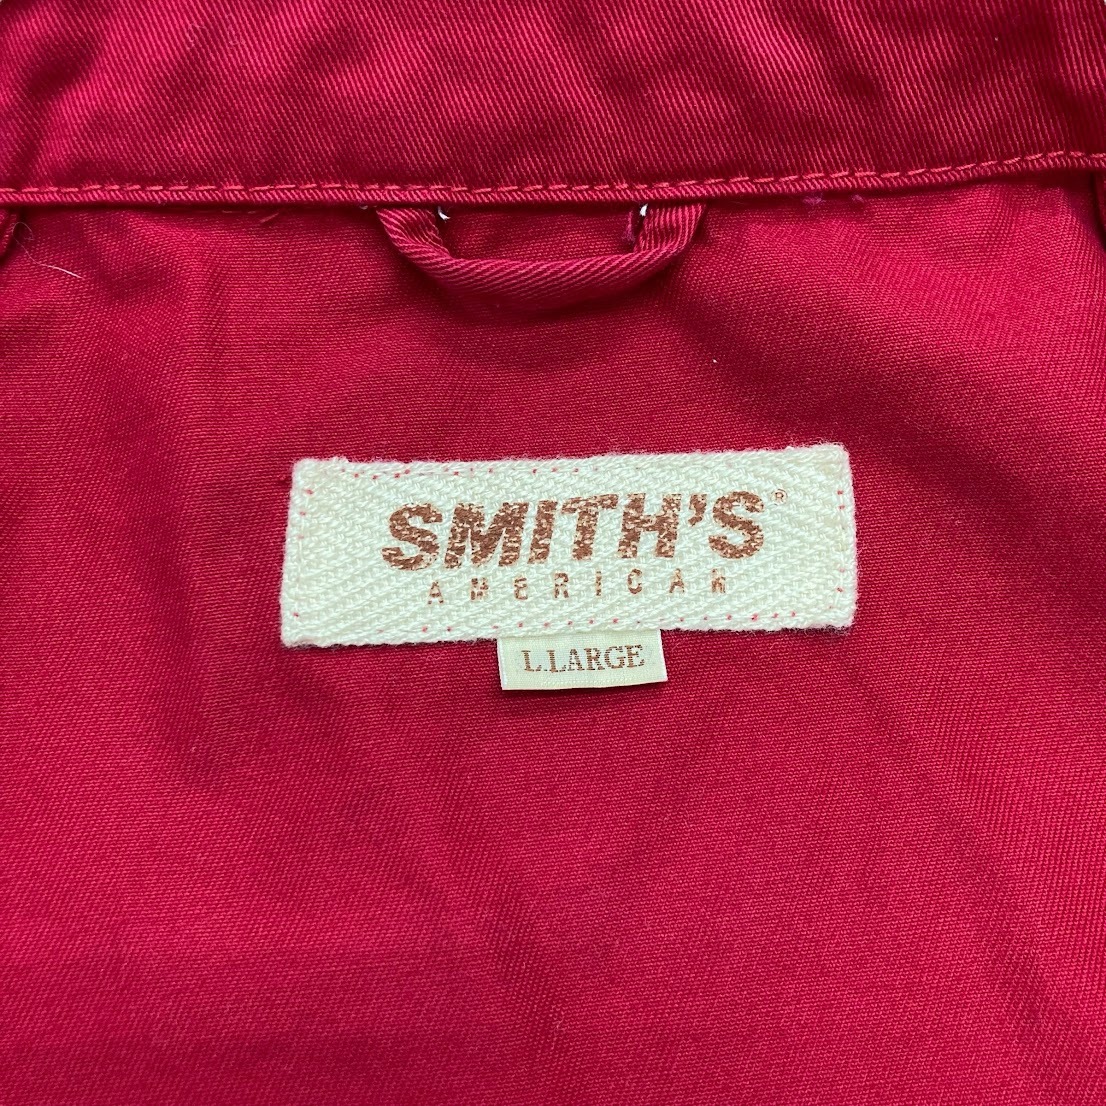 【ITDSAIJGWWMQ】SMITH'S AMERICAN スミスアメリカン ジャケット アウター 上着 メンズ 赤 レッド_画像6